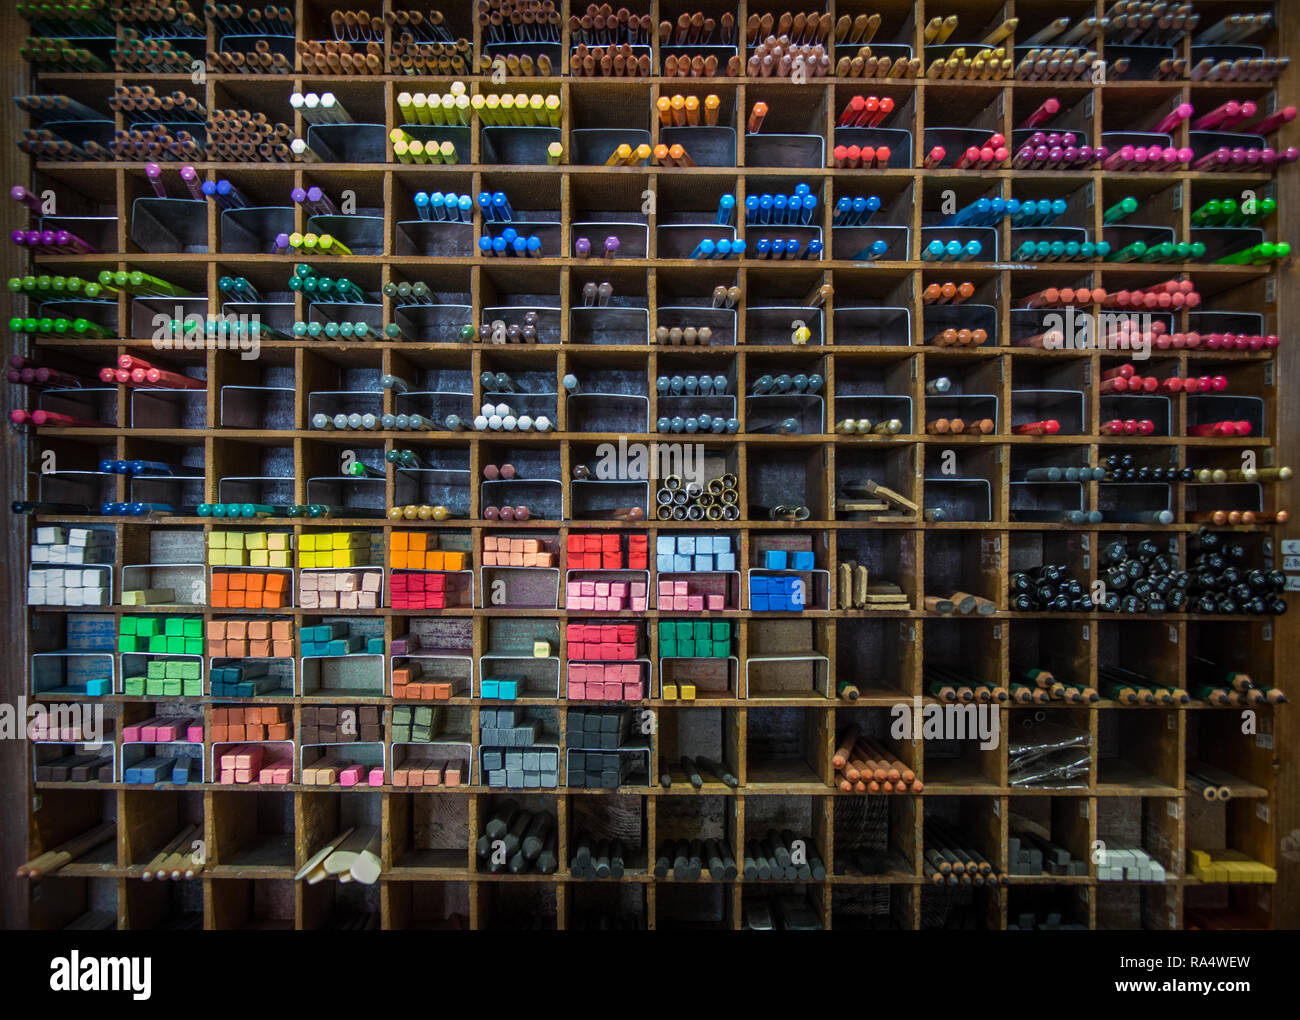 Farbige Pastellkreide ein Buntstifte Regal im Art store Muster Hintergrund  Stockfotografie - Alamy